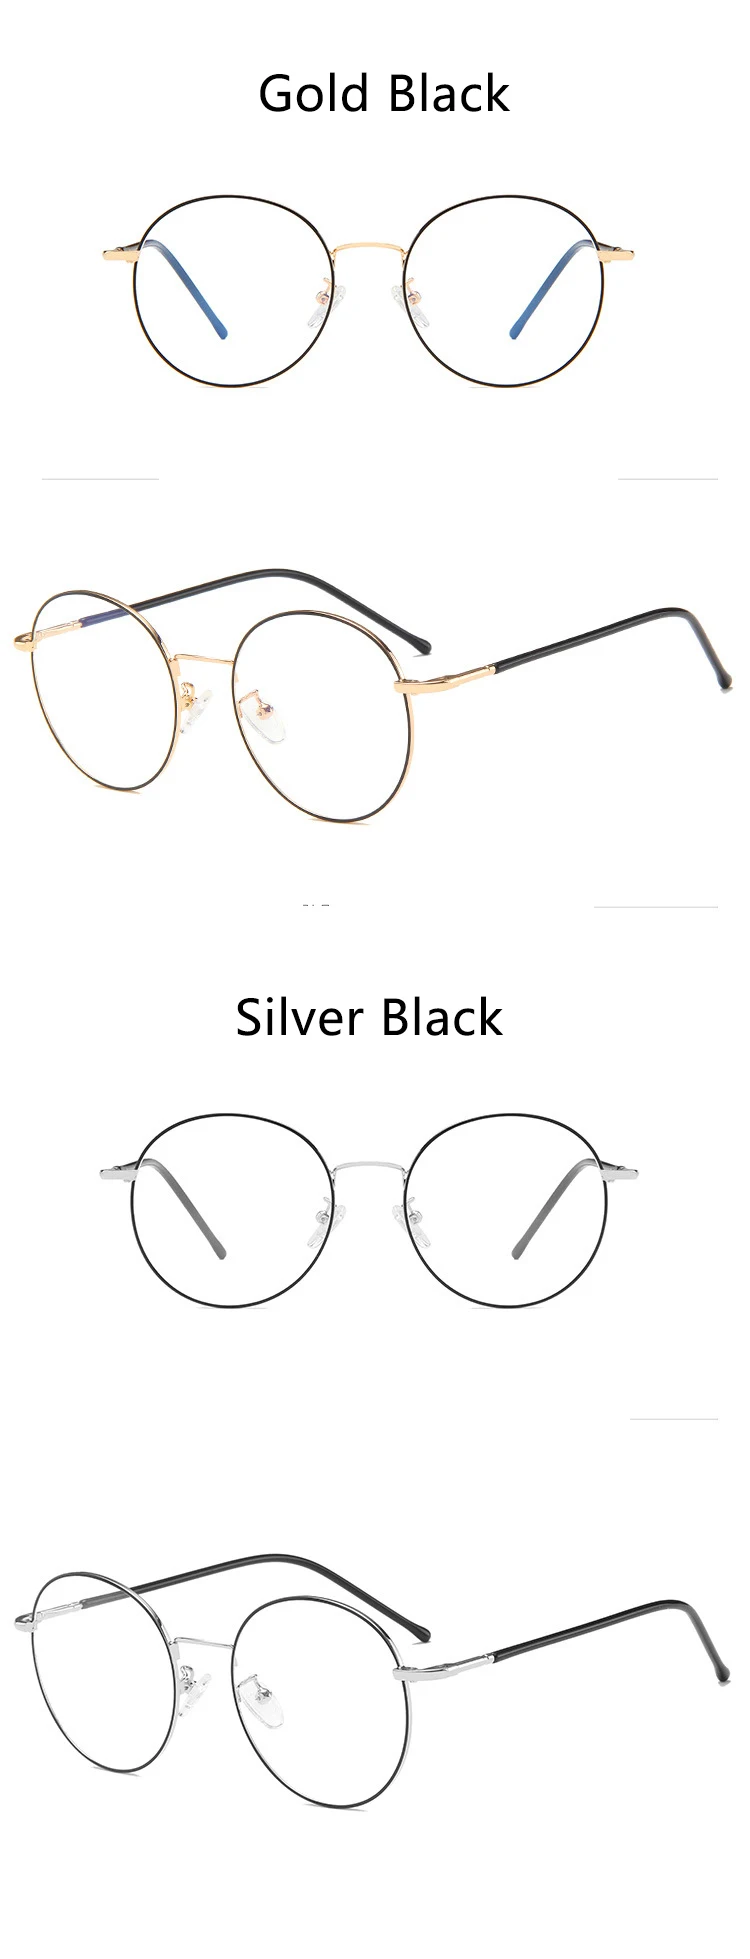 Синий светильник, блокирующие очки, круглые поддельные дизайнерские очки для близорукости, очки для игр без рецепта